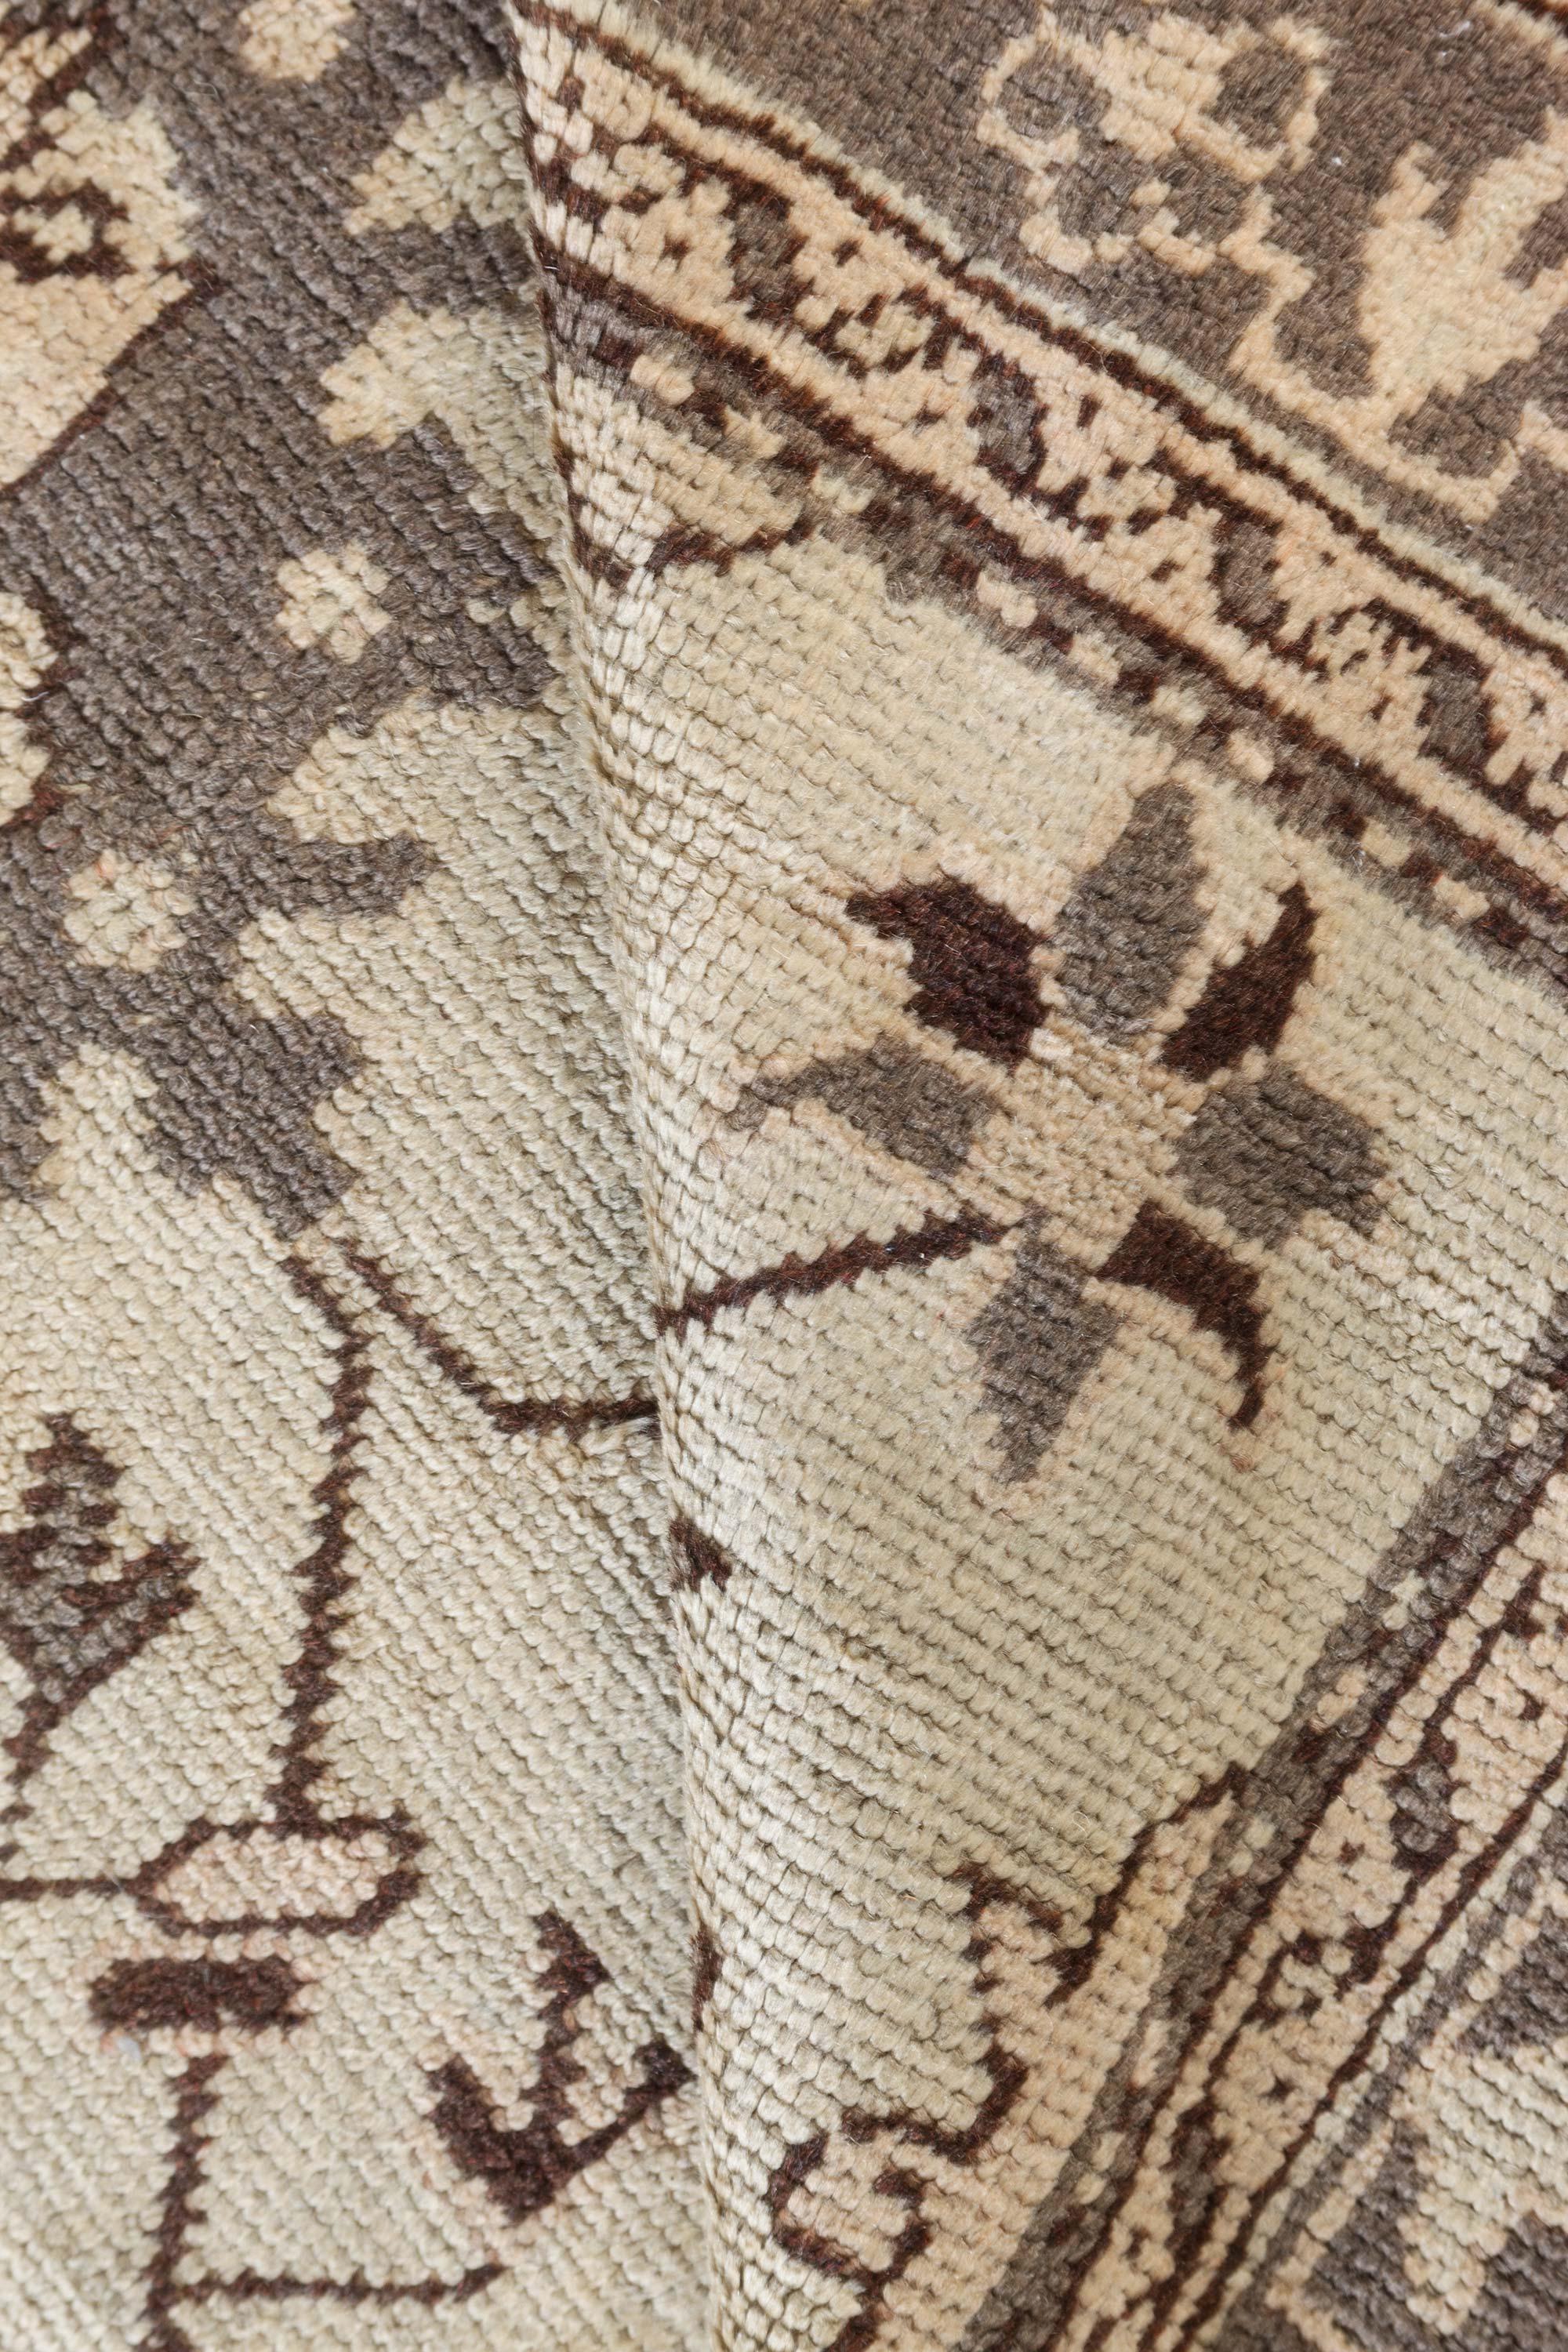 Authentic Early 20th Century Turkish Oushak botanic handmade wool rug.
Size: 5'0